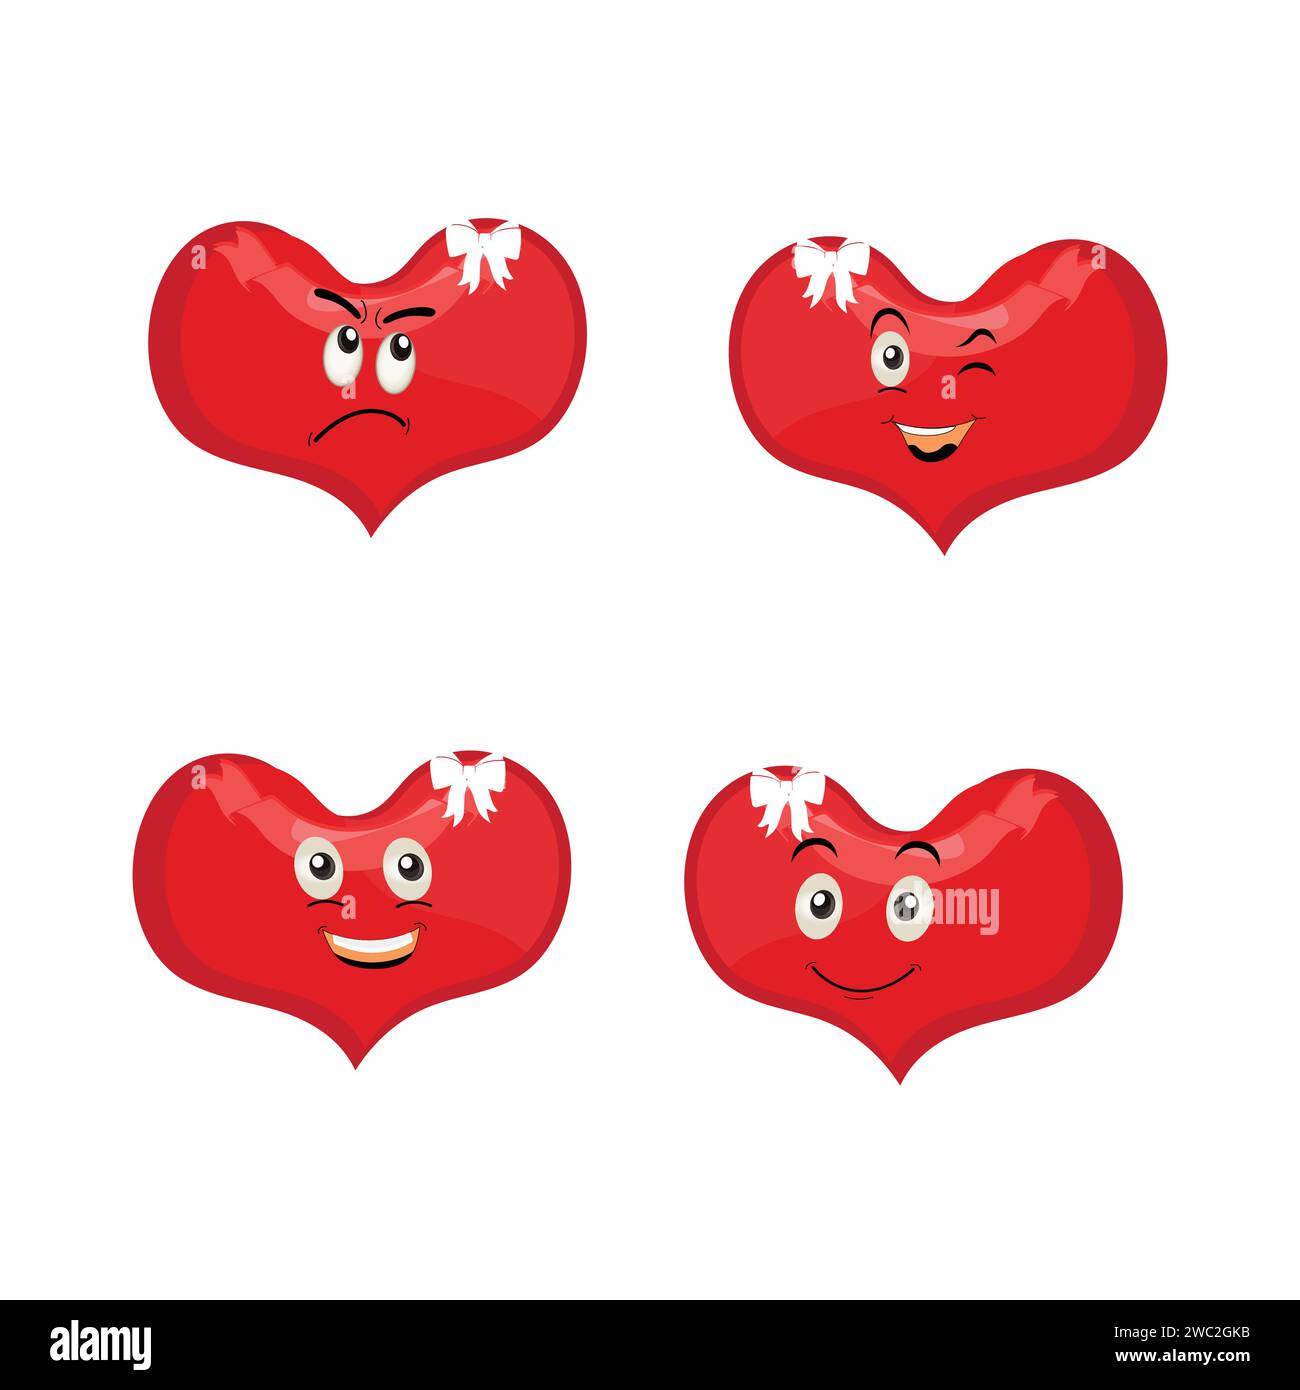 Coeur drôle personnage de dessin animé pose différente. Personnage de coeur rouge de dessin animé avec le visage drôle. Joyeux ensemble d'emoji coeur mignon. Illustration vectorielle d'amour Illustration de Vecteur